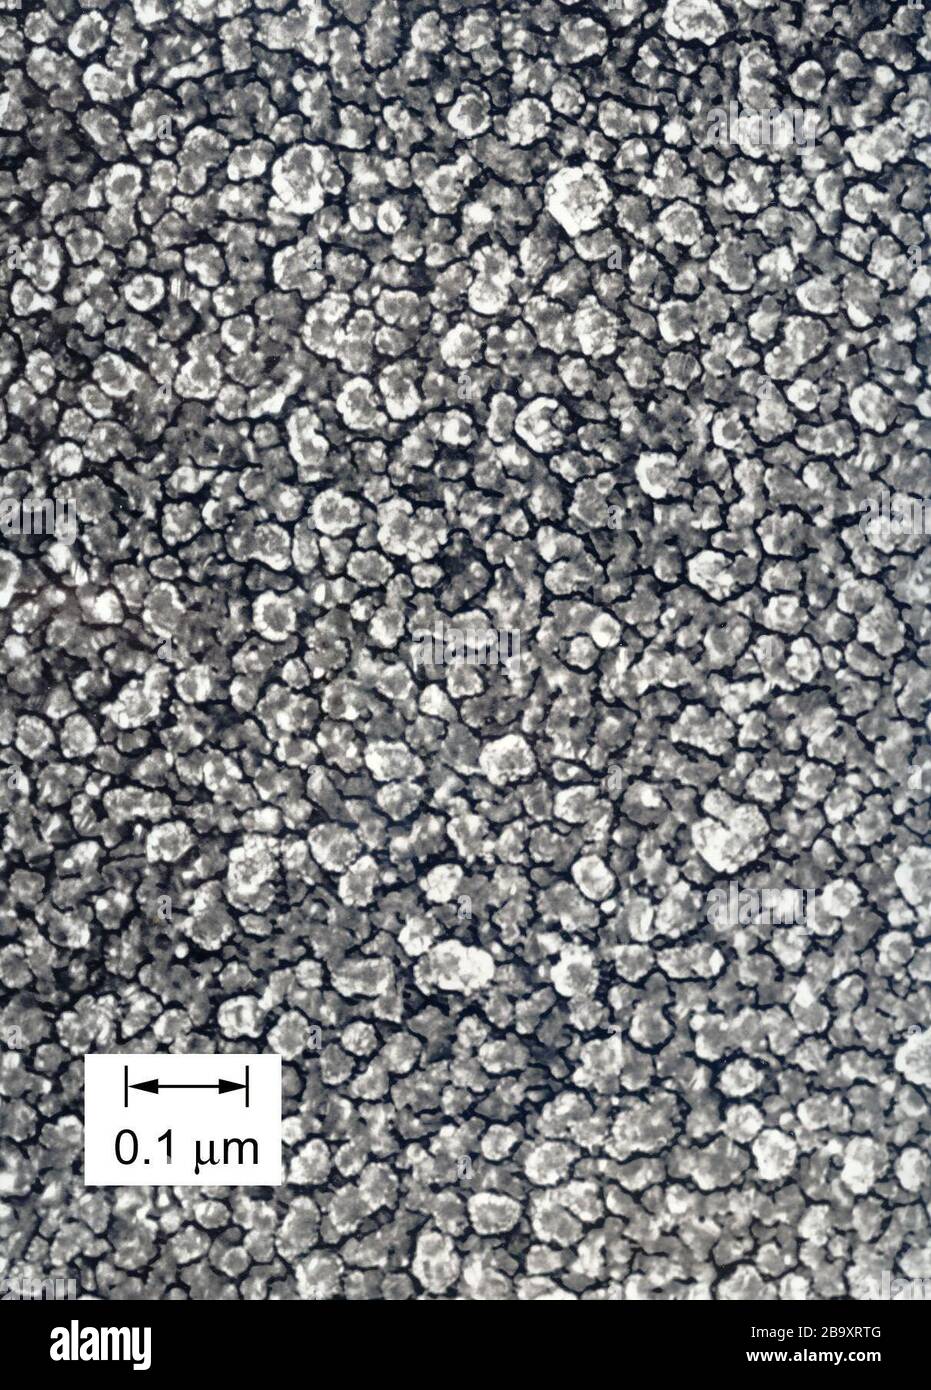 English: Balayage Electron Microscopy (SEM) image d'une réplique recouverte  au d'un revêtement de type diamant ta-C. Les éléments structuraux ne sont  pas des cristalloses, mais des nodules d'atomes de carbone greffés de